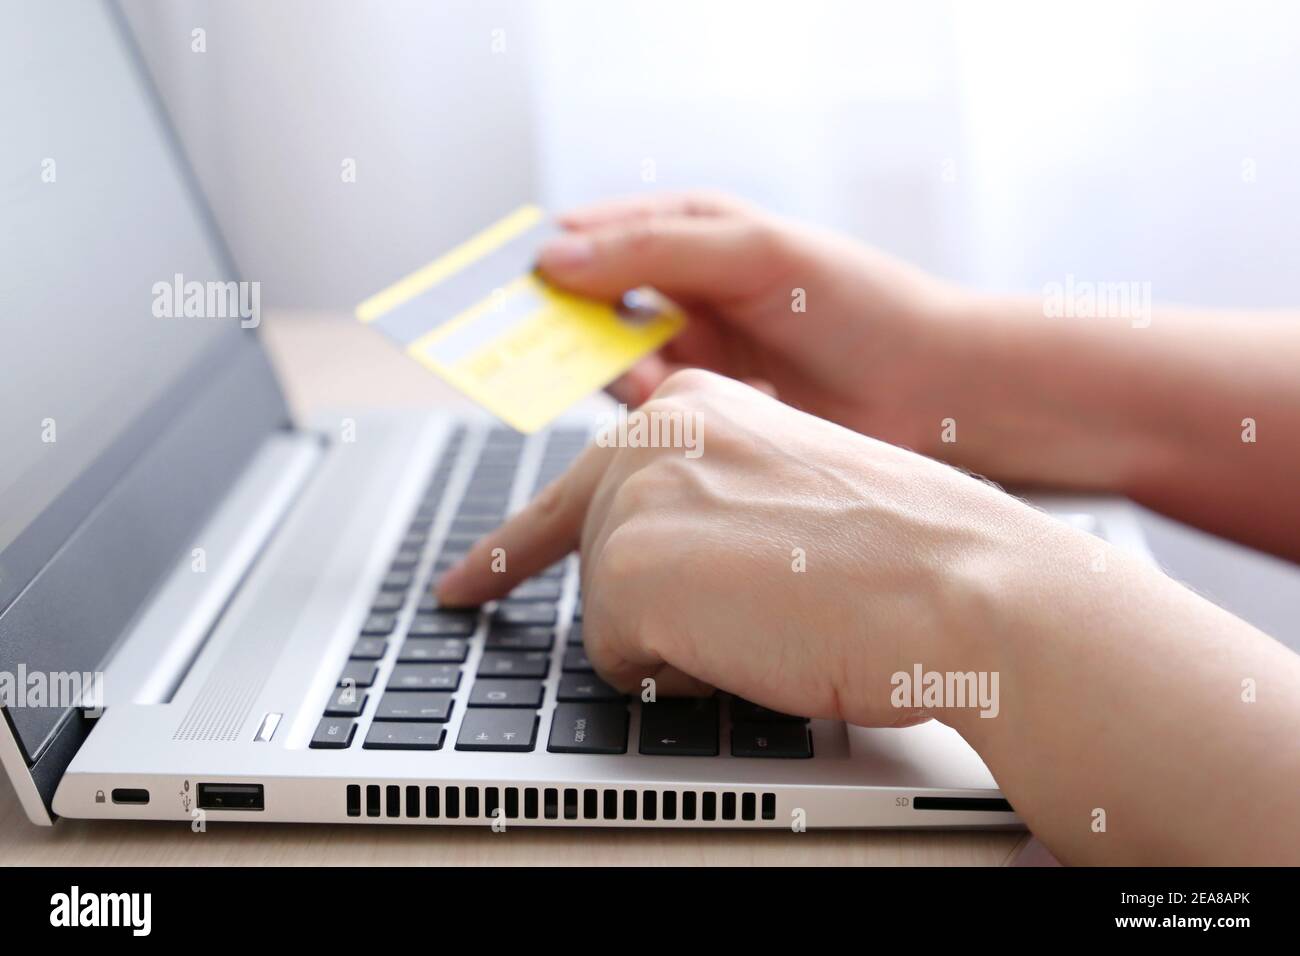 Femme tenant les types de carte de crédit sur le clavier d'ordinateur portable. Concept d'achat et de paiement en ligne, transactions financières Banque D'Images